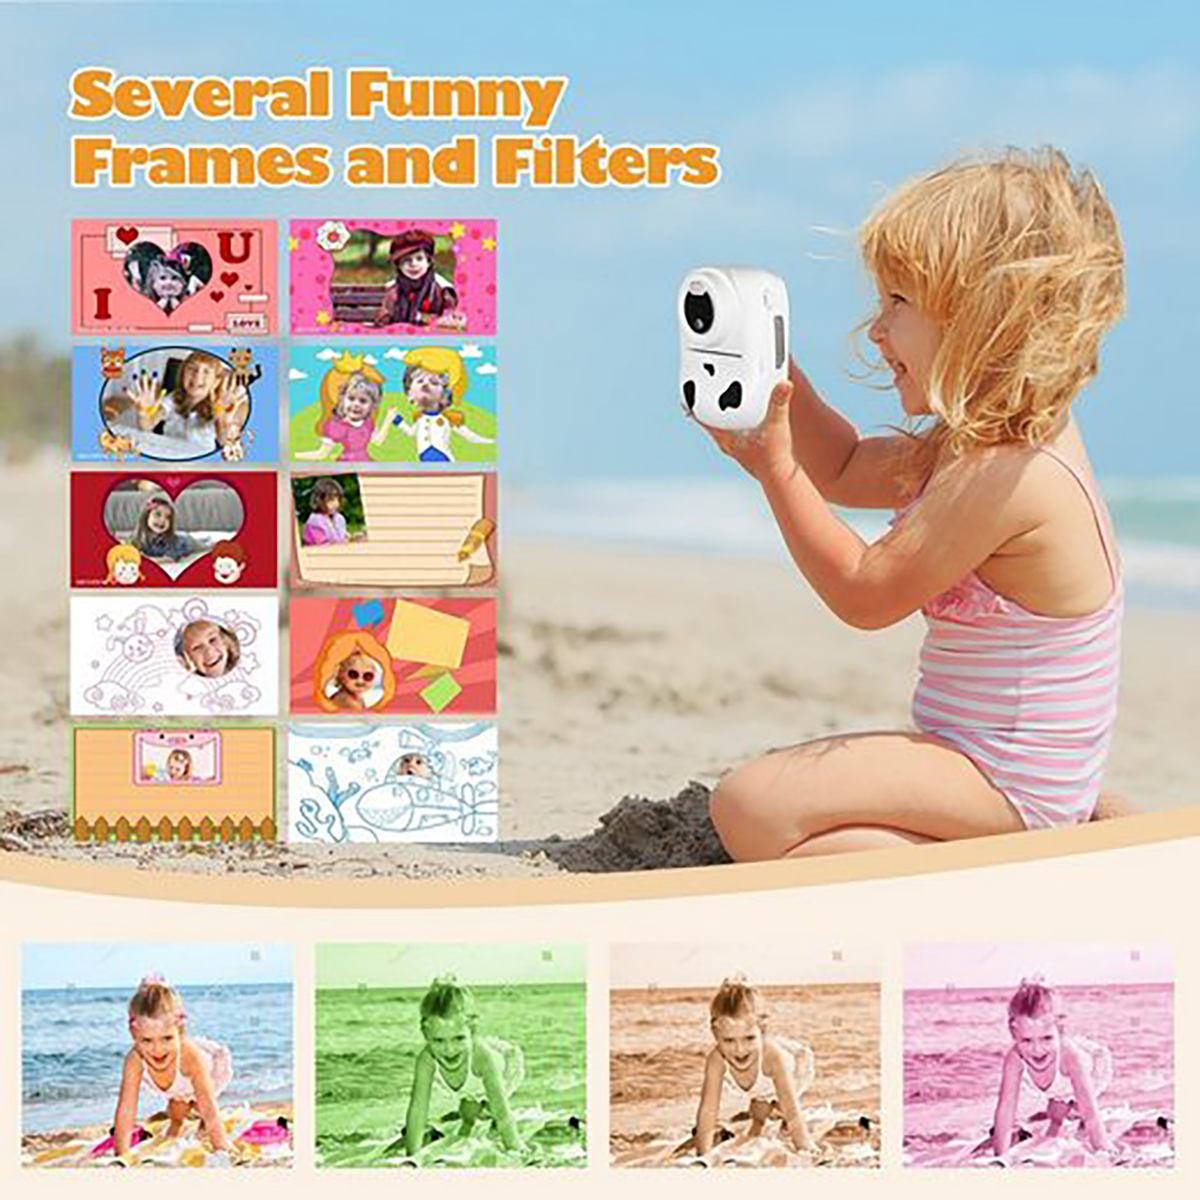 Kinderkamera Selfies machen Thermodruck-Sofortdruck-Digitalkamera-Kinder-Geburtstagsgeschenk-kann LINGDA Schwarz/Weiß-